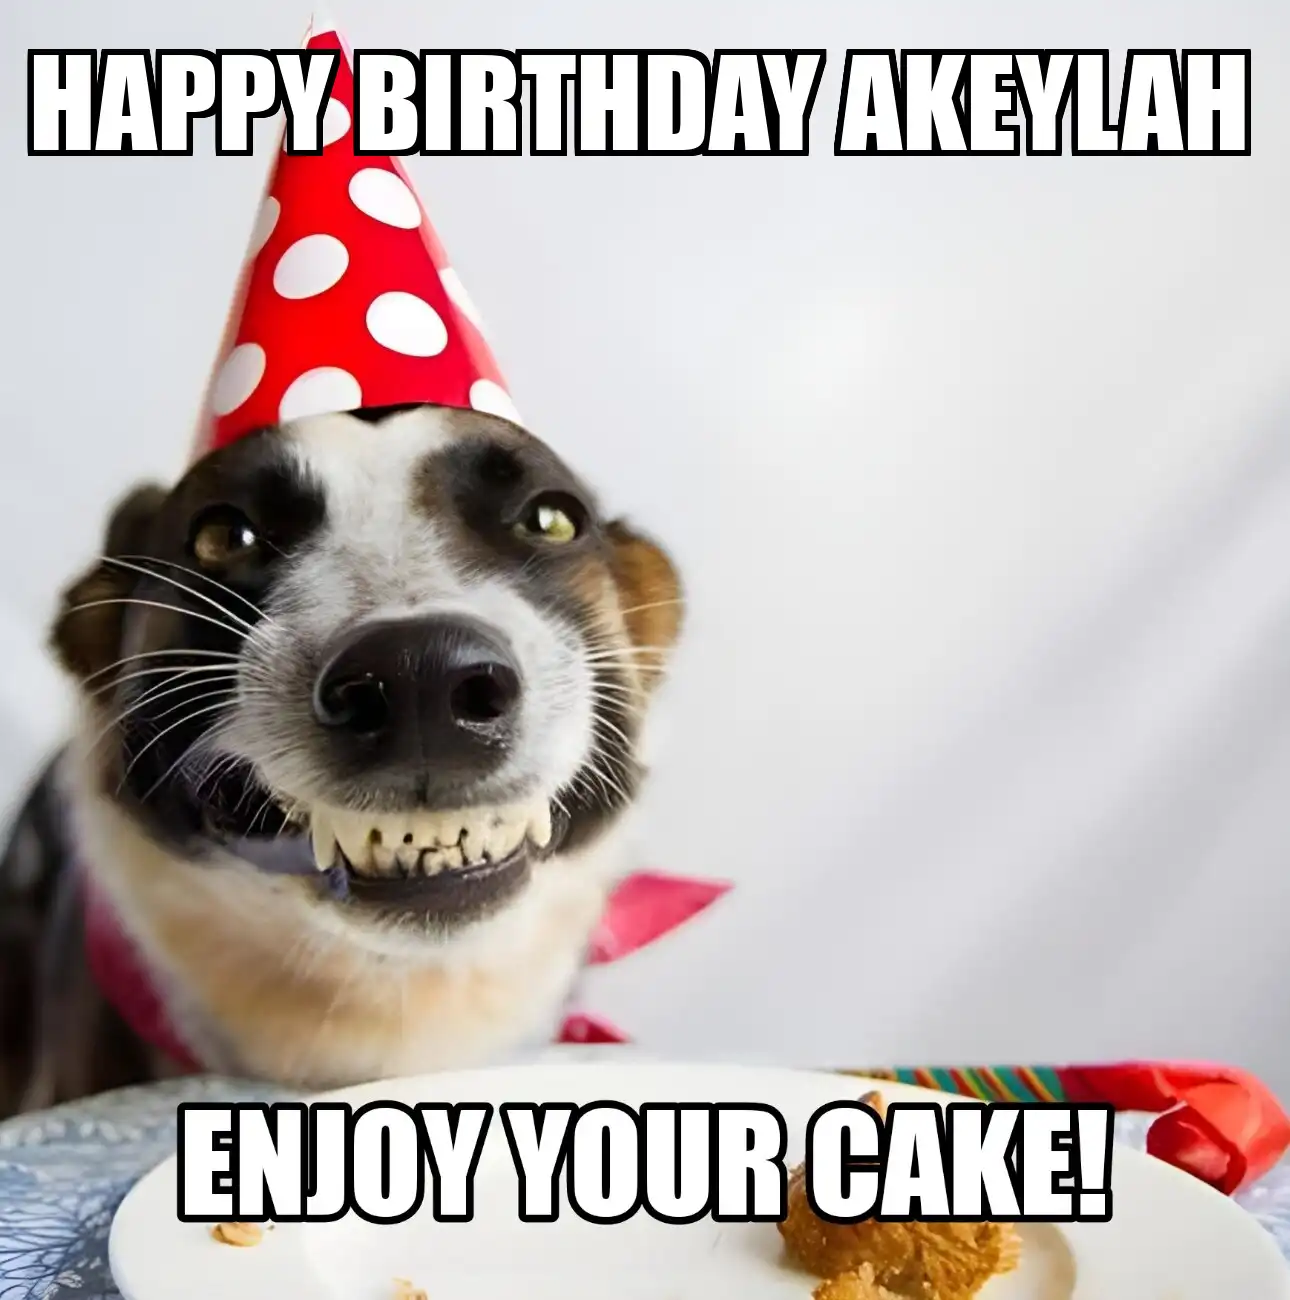 Happy Birthday Akeylah Enjoy Your Cake Dog Meme